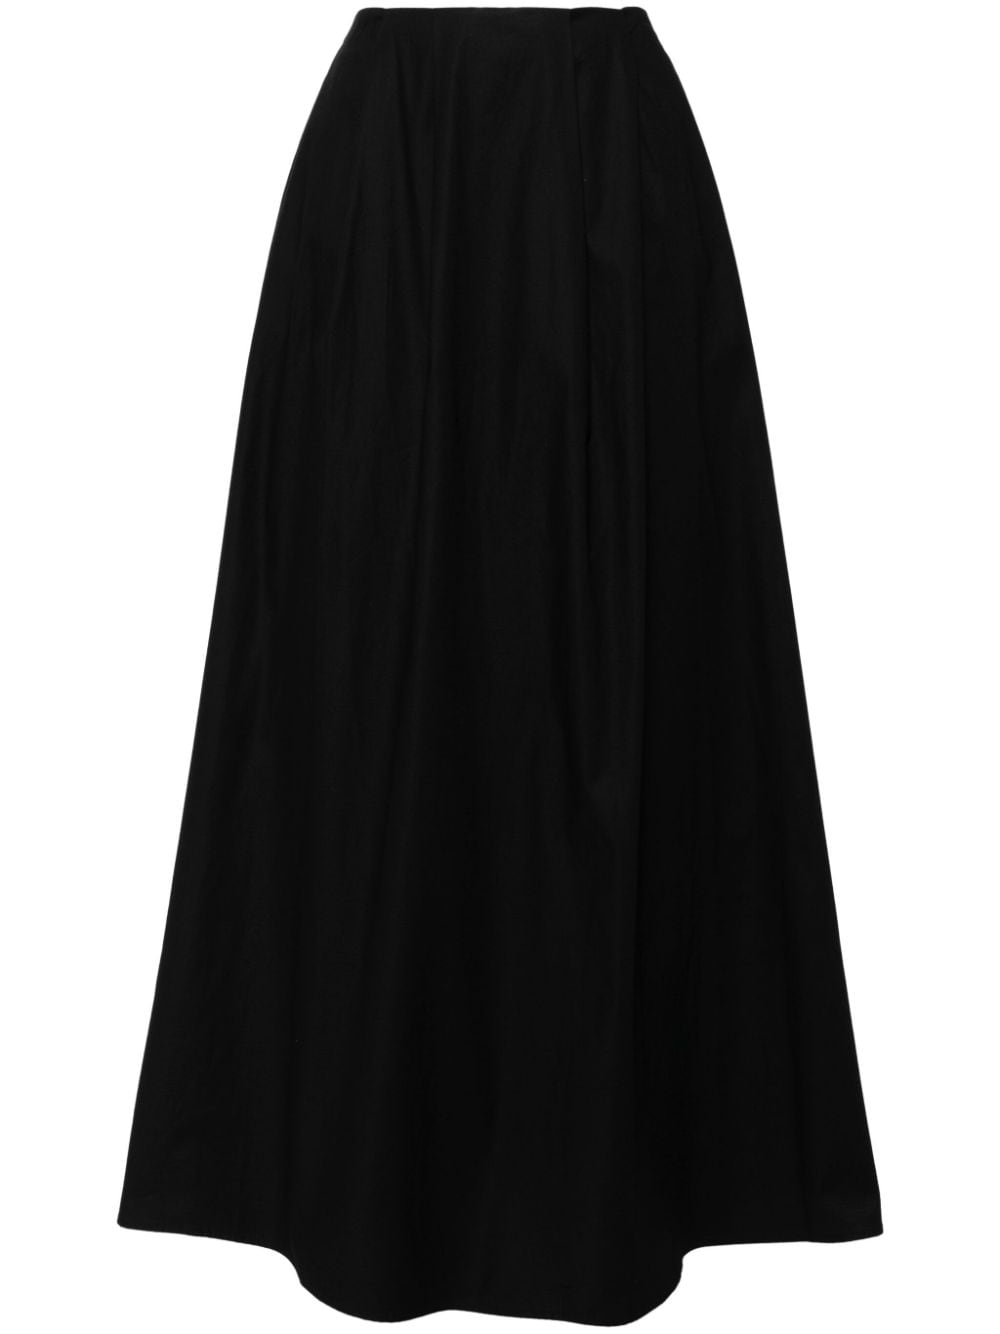 Reformation Lucy A-line skirt - Black von Reformation